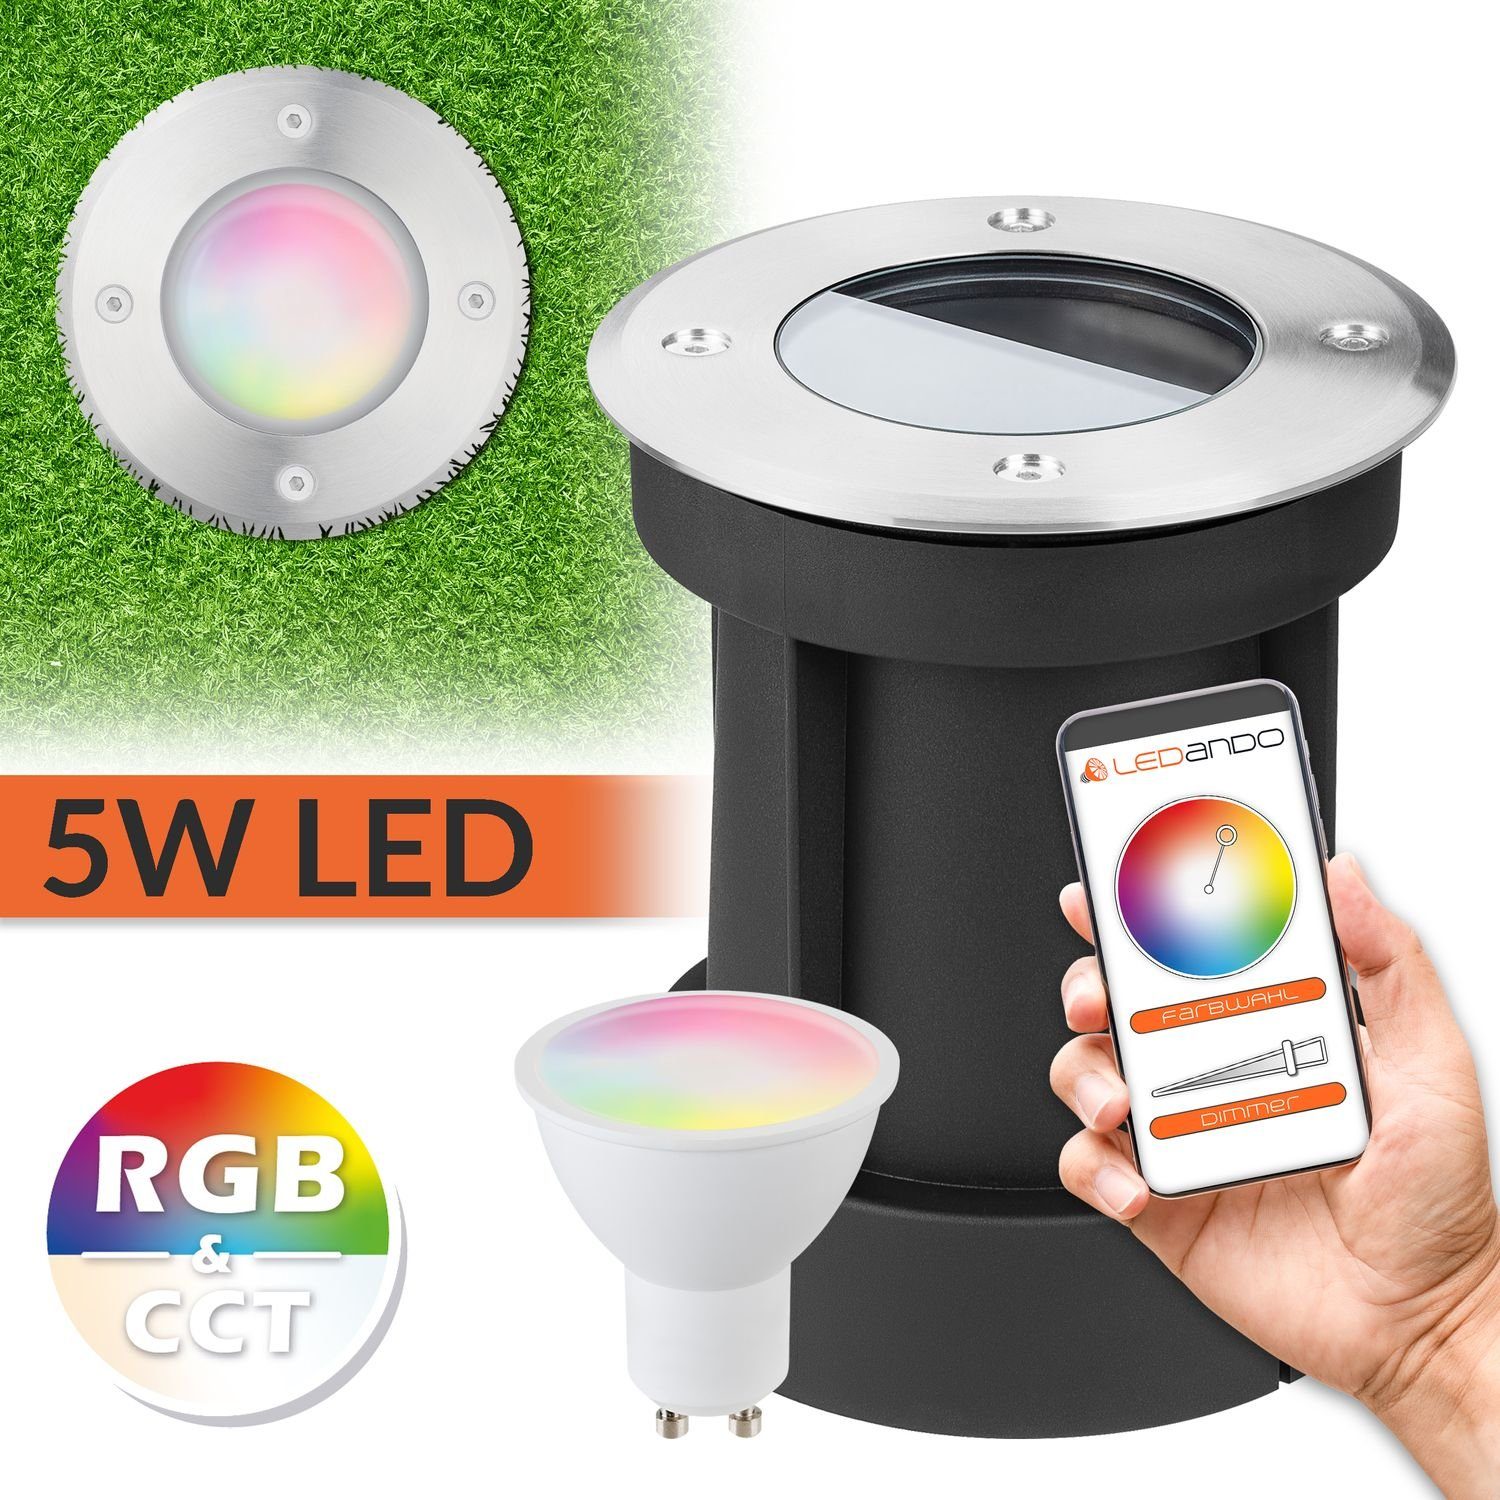 LED Bodeneinbaustrahler LEDANDO App Set - LED 5W RGB + steuerbar WiFi Einbaustrahler per - Smart